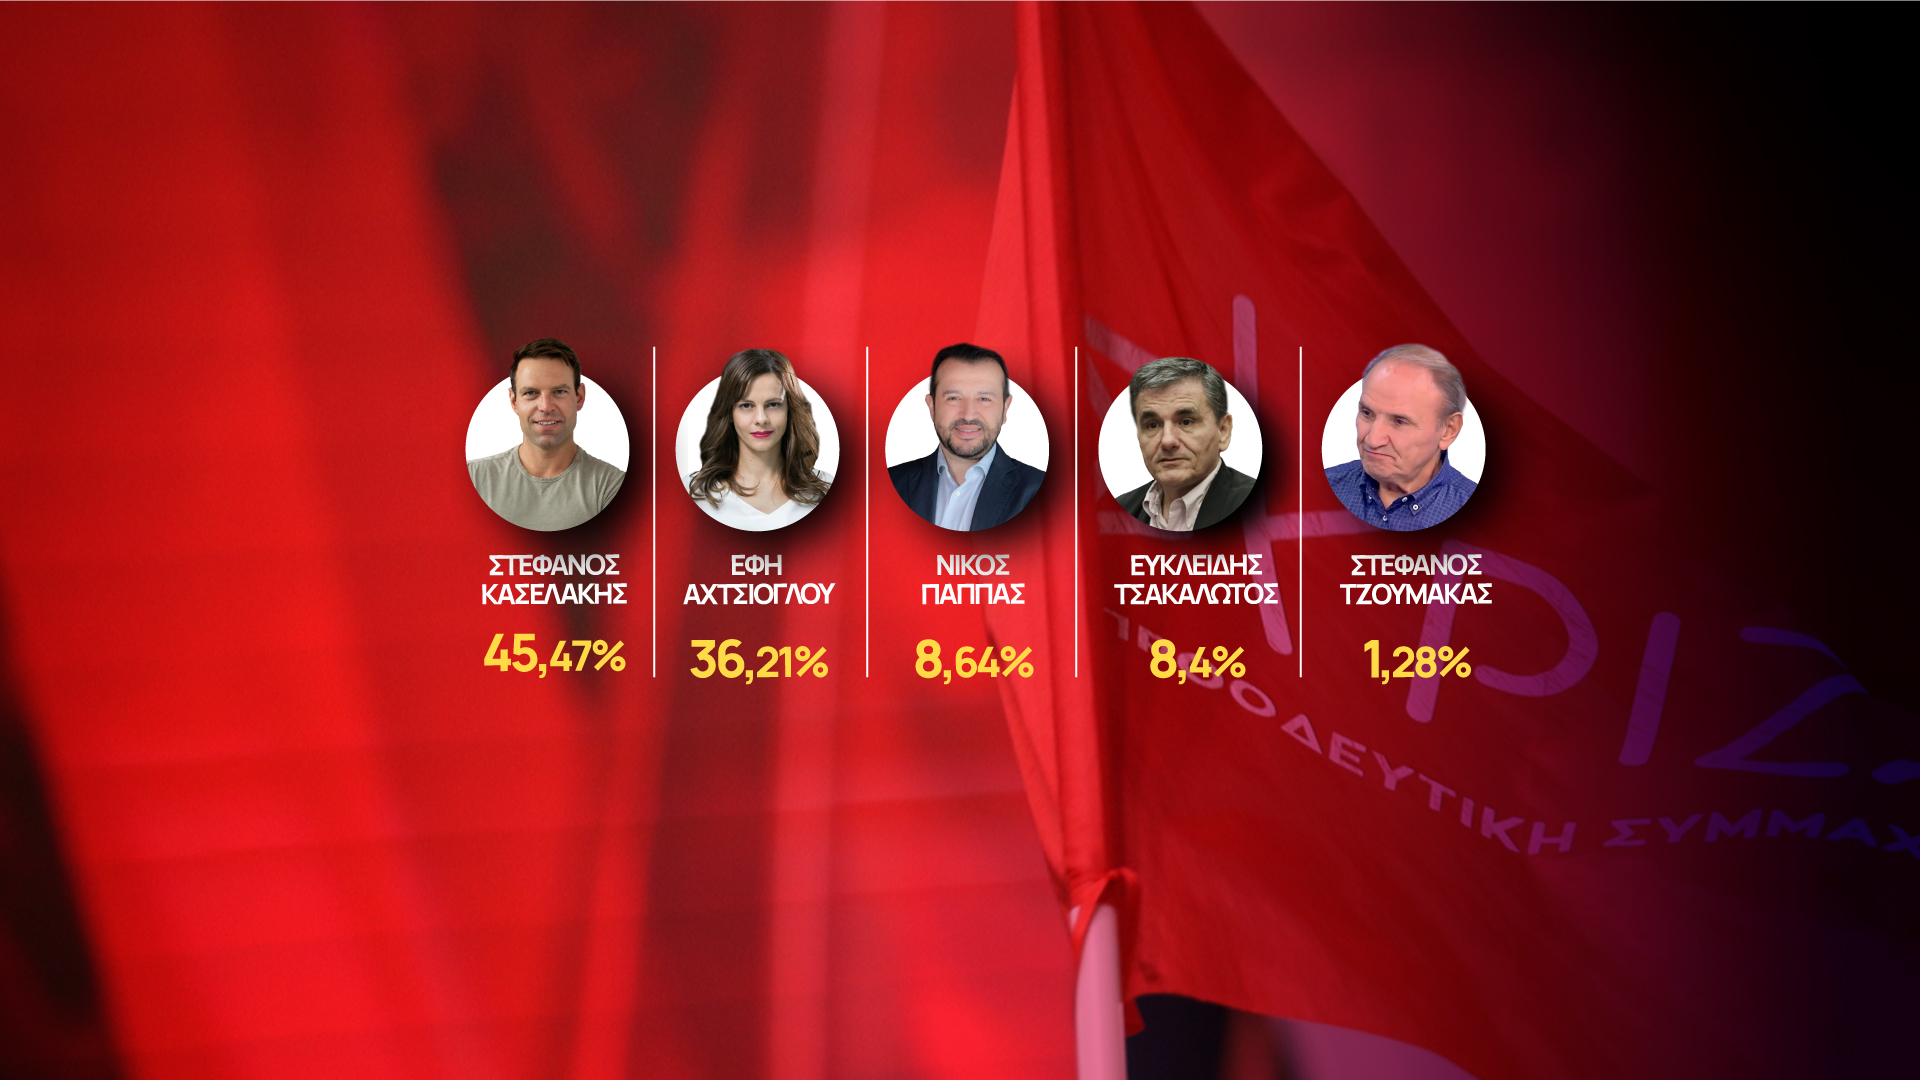 Εκλογές ΣΥΡΙΖΑ (Live): Πρώτος ο Στέφανος Κασσελάκης με 45,47% – Στον β’ γύρο θα κριθεί η προεδρία